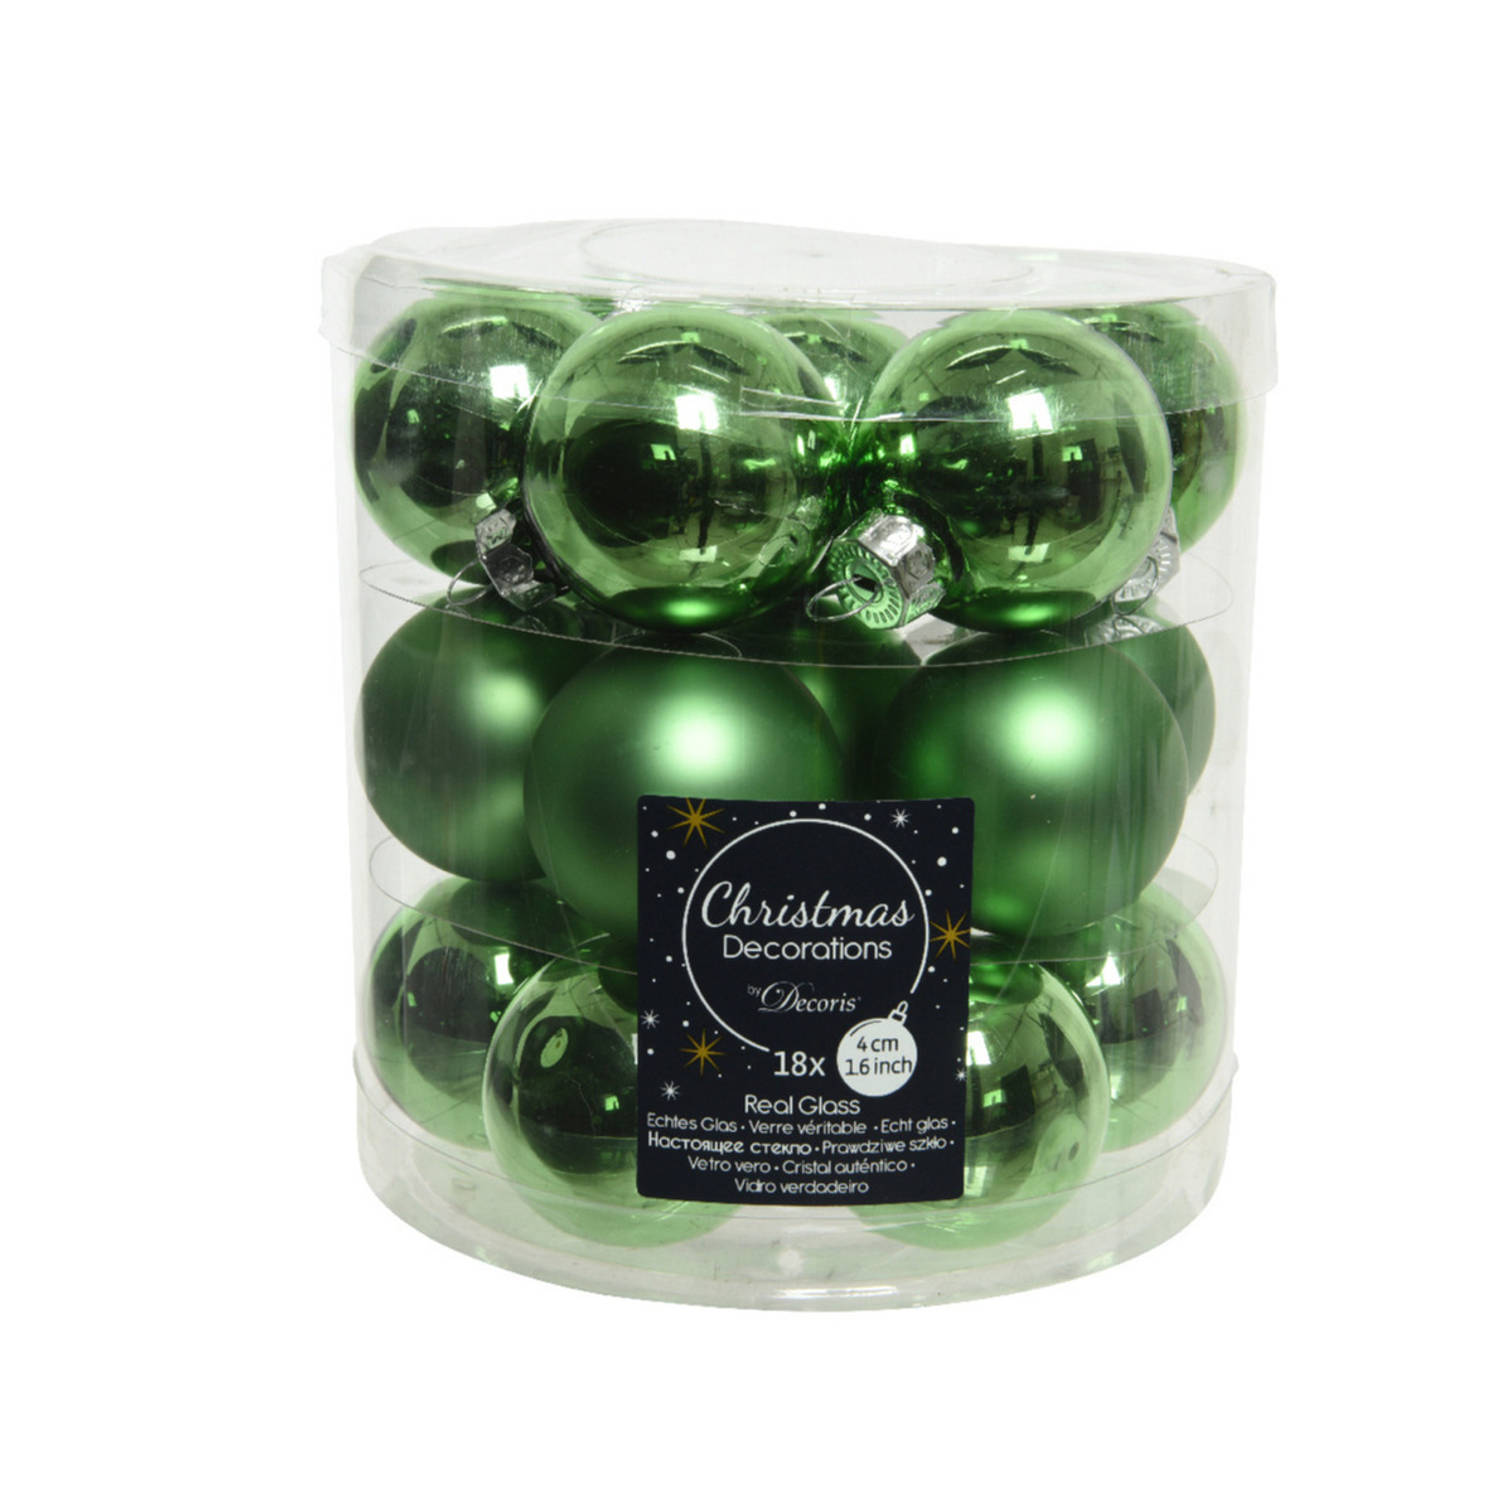 18x stuks kleine glazen kerstballen groen 4 cm mat/glans - Kerstbal